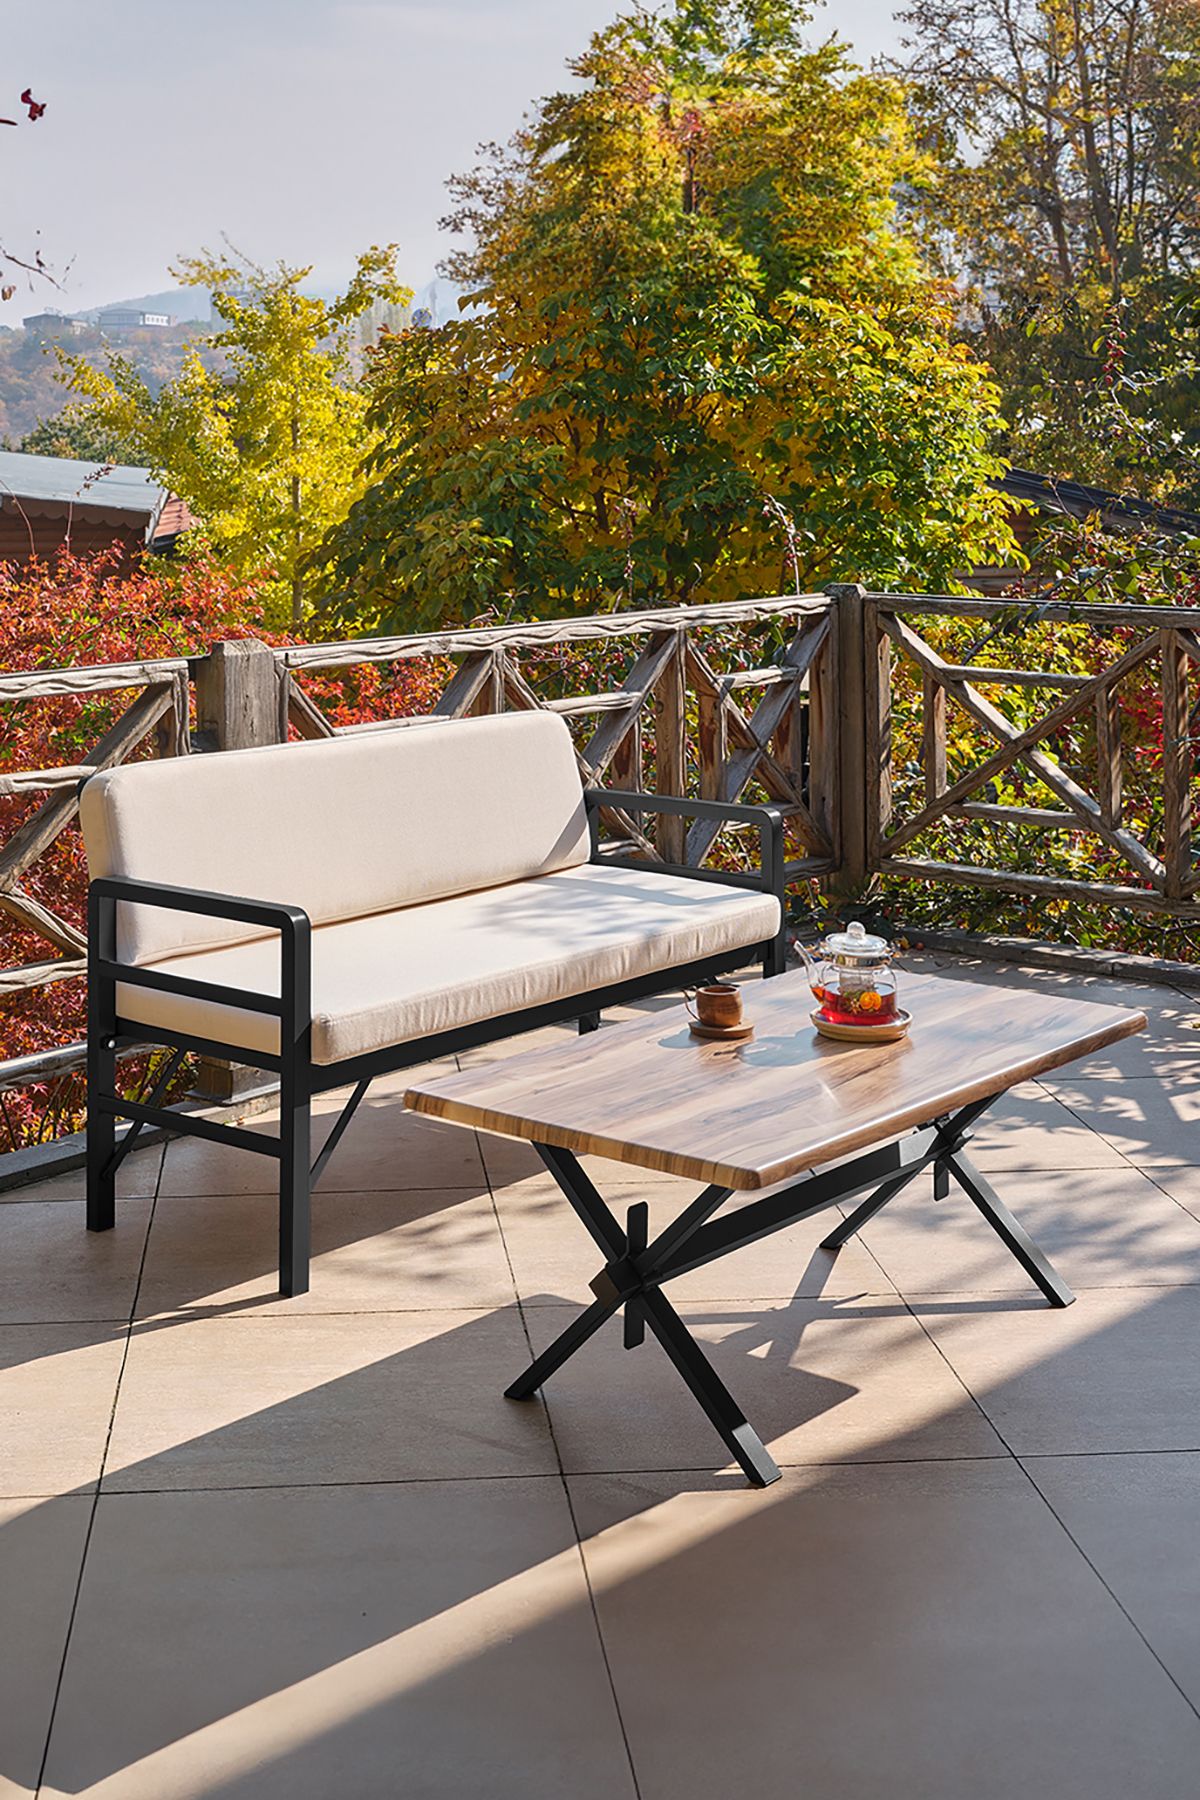 Unimet Pandora Katlanır Balkon&teras Bahçe Koltuk Siyah-krem